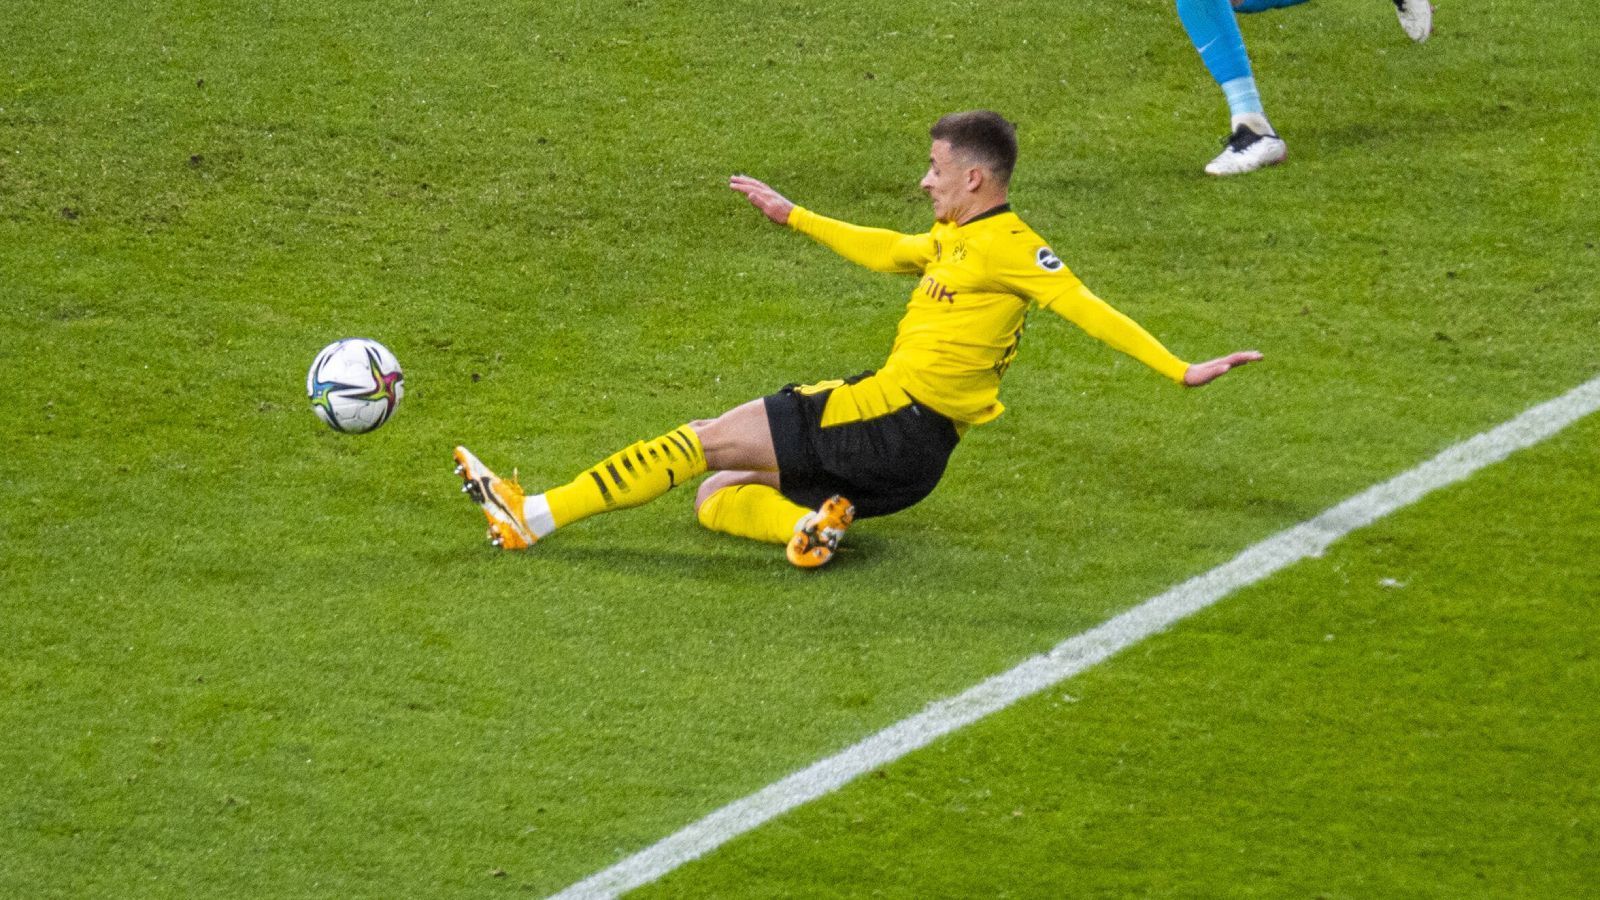 
                <strong>Platz 3 (geteilt): Thorgan Hazard (Borussia Dortmund)</strong><br>
                Auf dem Treppchen wird es eng, satte sechs Spieler teilen sich den dritten Rang im Ranking. Dazu gehört auch Thorgan Hazard, der in der Rückrunde unter Edin Terzic wenig spielte und auch Verletzungspech hatte. Nur 16 Bundesliga-Partien konnte Hazard bestreiten, sein Wert sank von 32 auf 27 Millionen, ein Minus von fünf Millionen also.
              